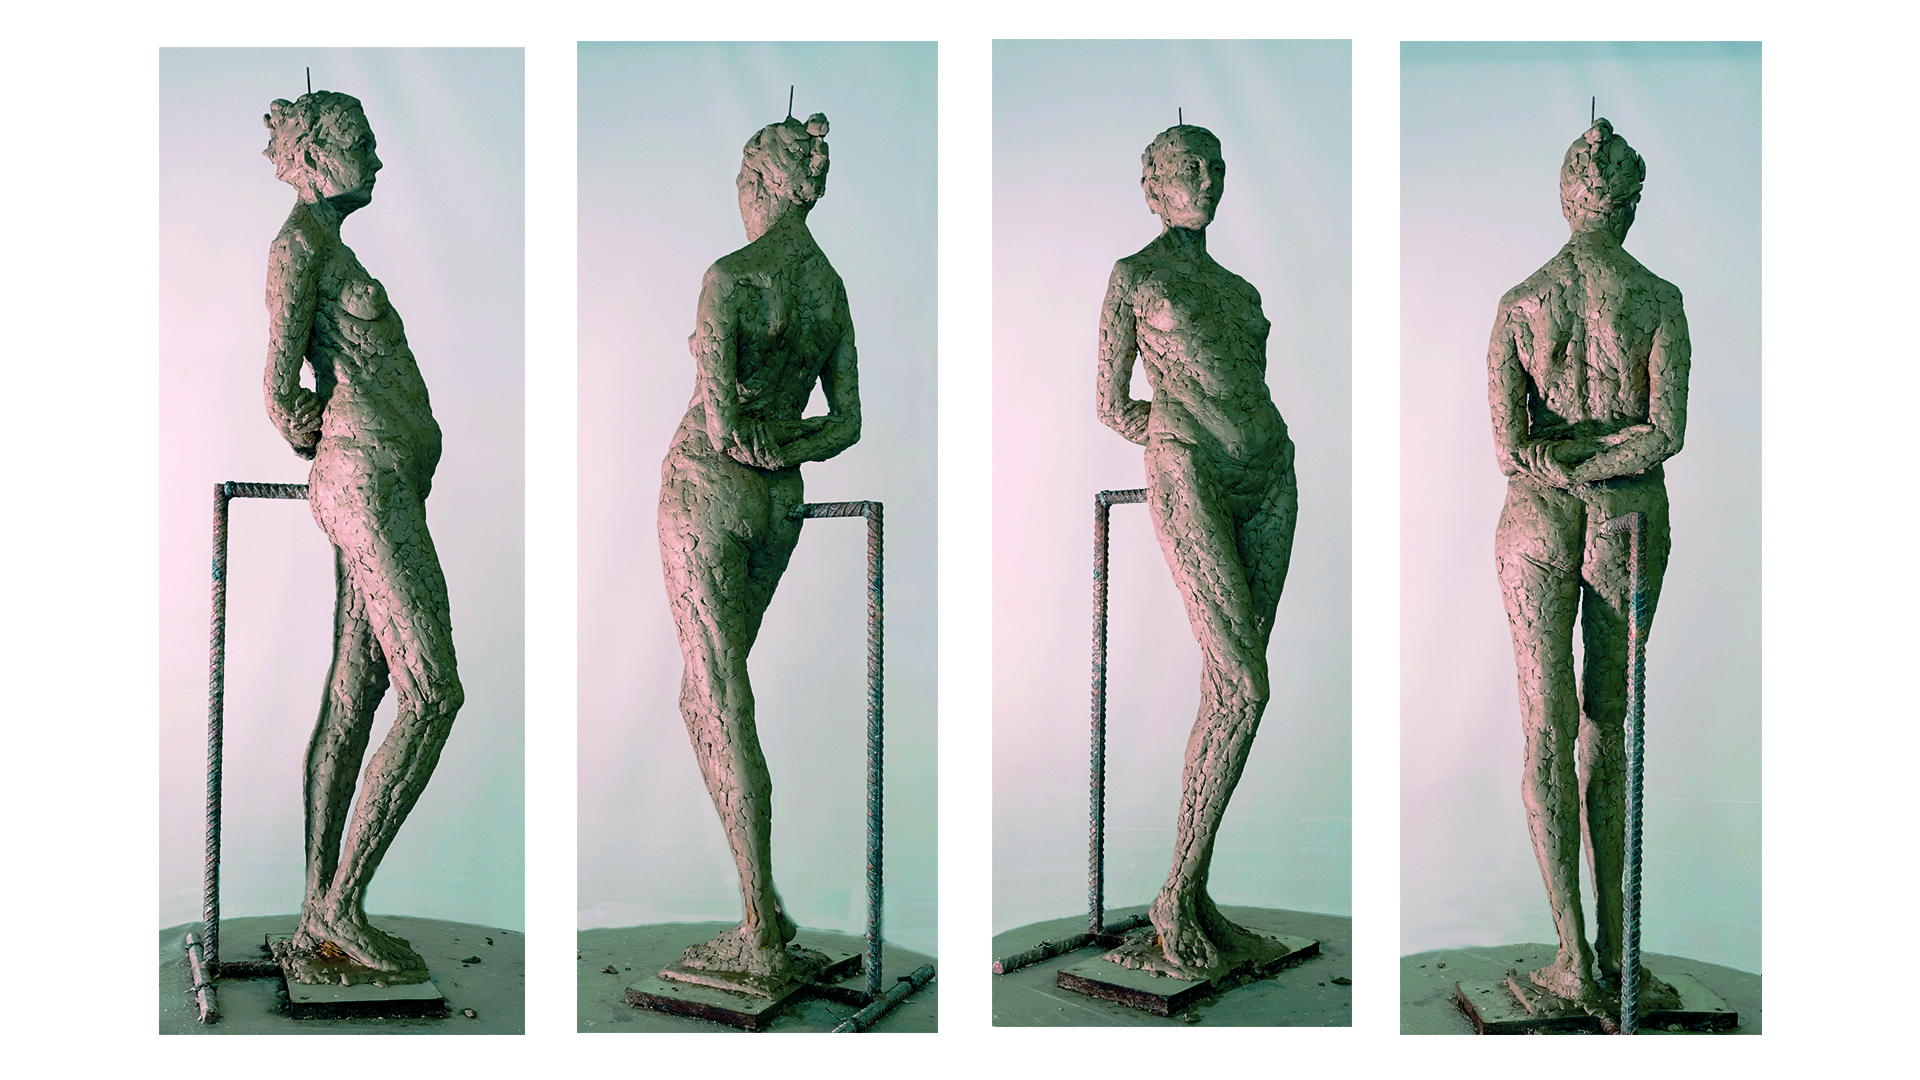 Rzeźba przedstawia młodą kobietę, w klasycznej rzeźbiarskiej pozie jaką jest kontrapost. Postać stoi na lewej nodze, a prawą ma lekko ugiętą. Ręce skrzyżowane za plecami, głowa jest lekko uniesiona i skierowana w prawą stronę. Rzeźba wykonana jest z gliny